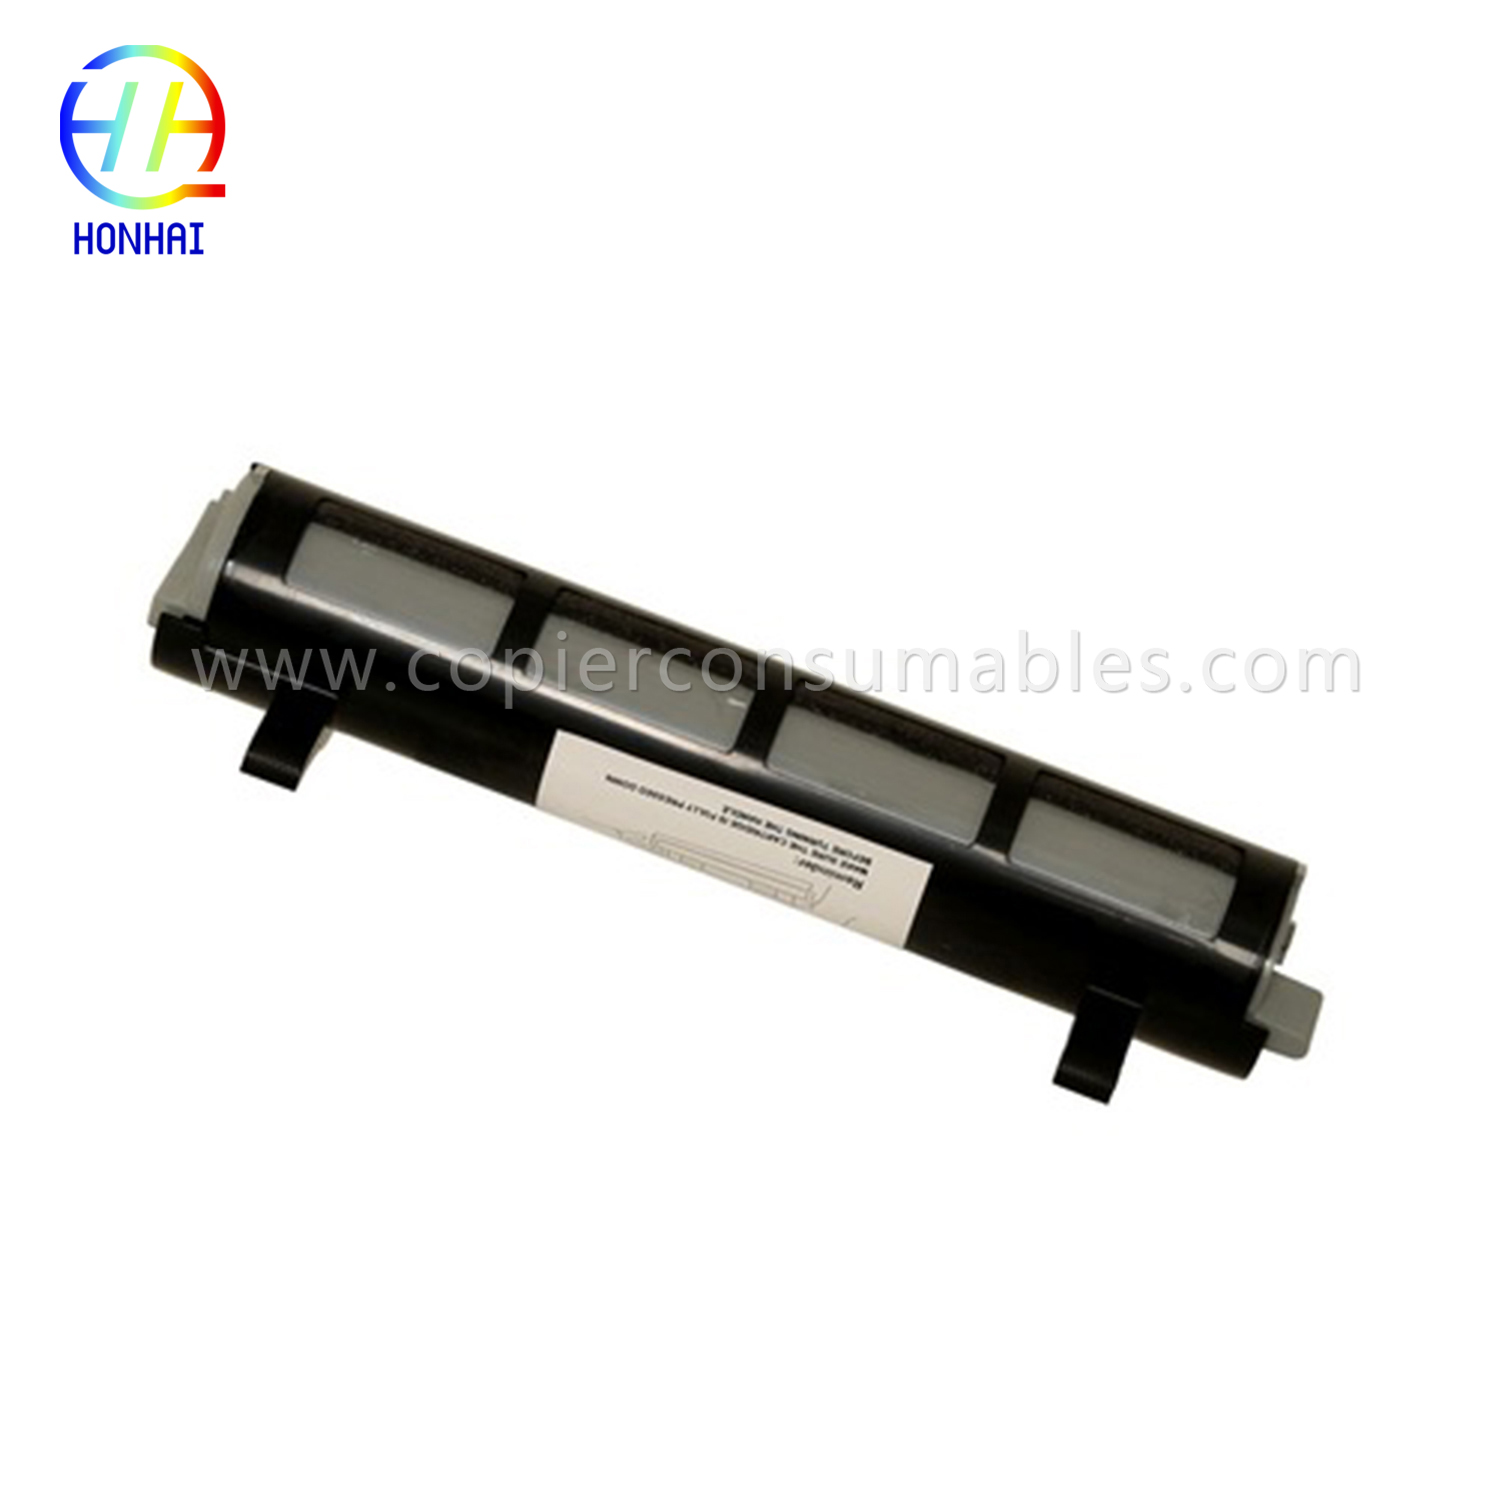 Black Toner Cartridge maka Panasonic Kx-FL511 Kx-Fa83 Kx-FL541 Kx-FL611 Kx-Flm651 Kx-Flm661 Kx-Flm671